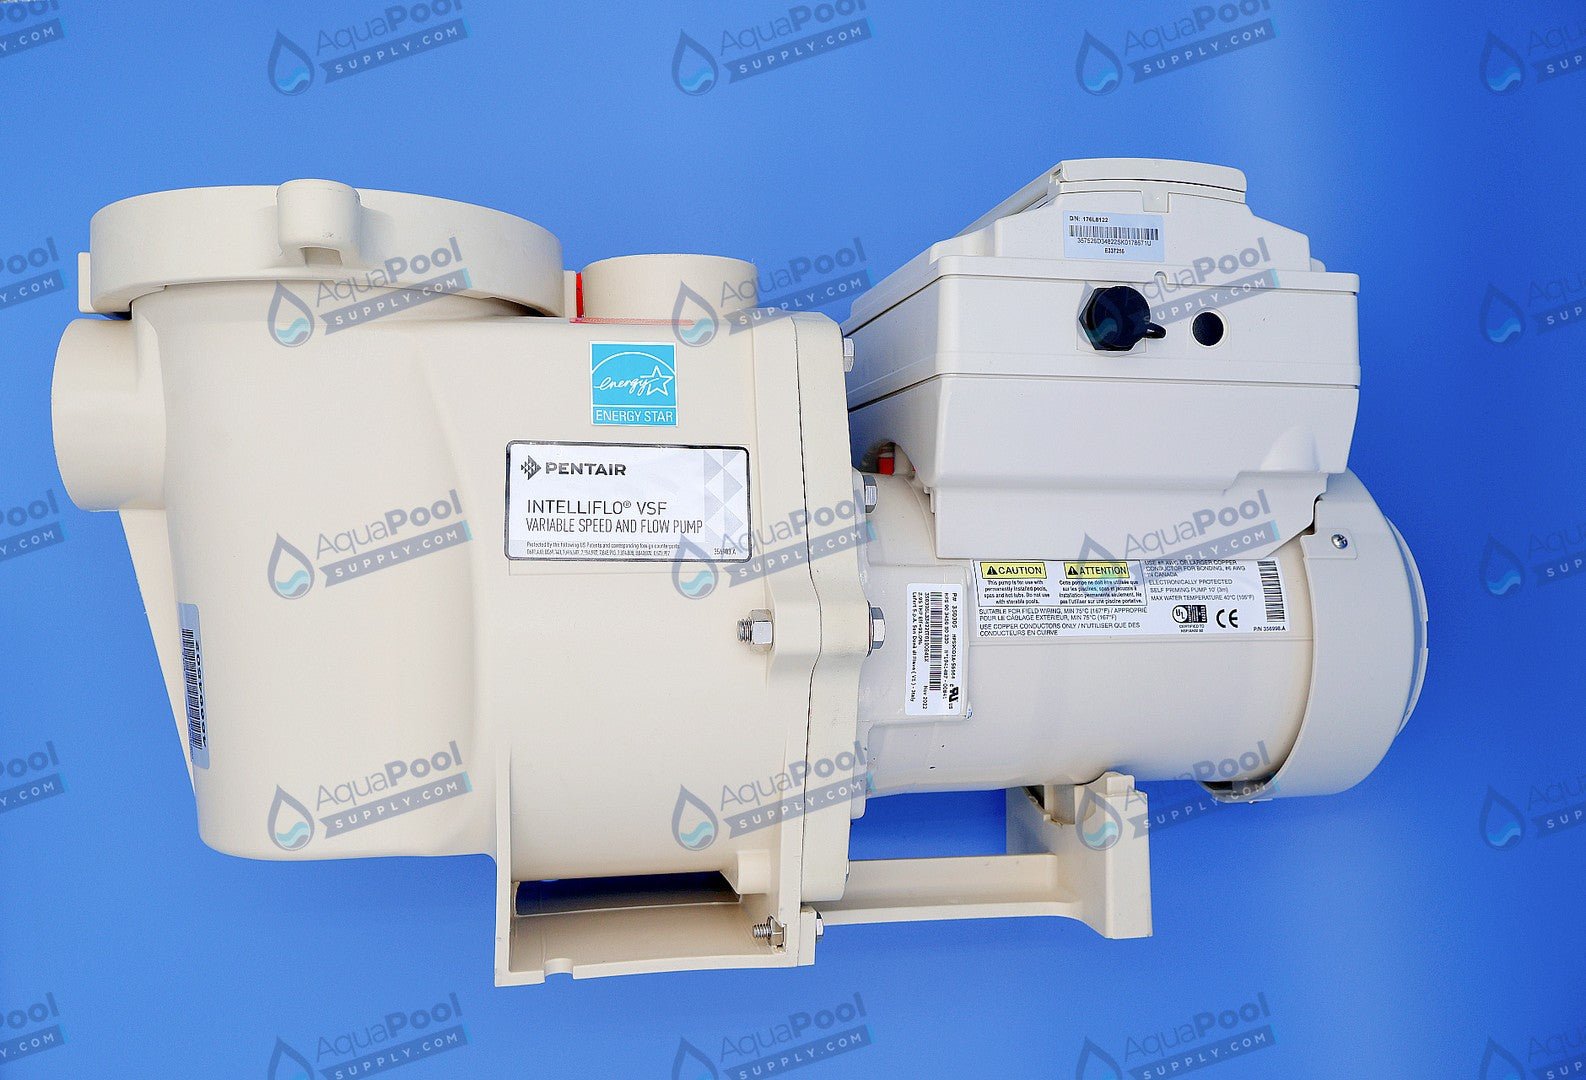 Pentair IntelliFlo® Variable Speed Pump EC-011028 (011056) - Variable Speed Pumps - img-1